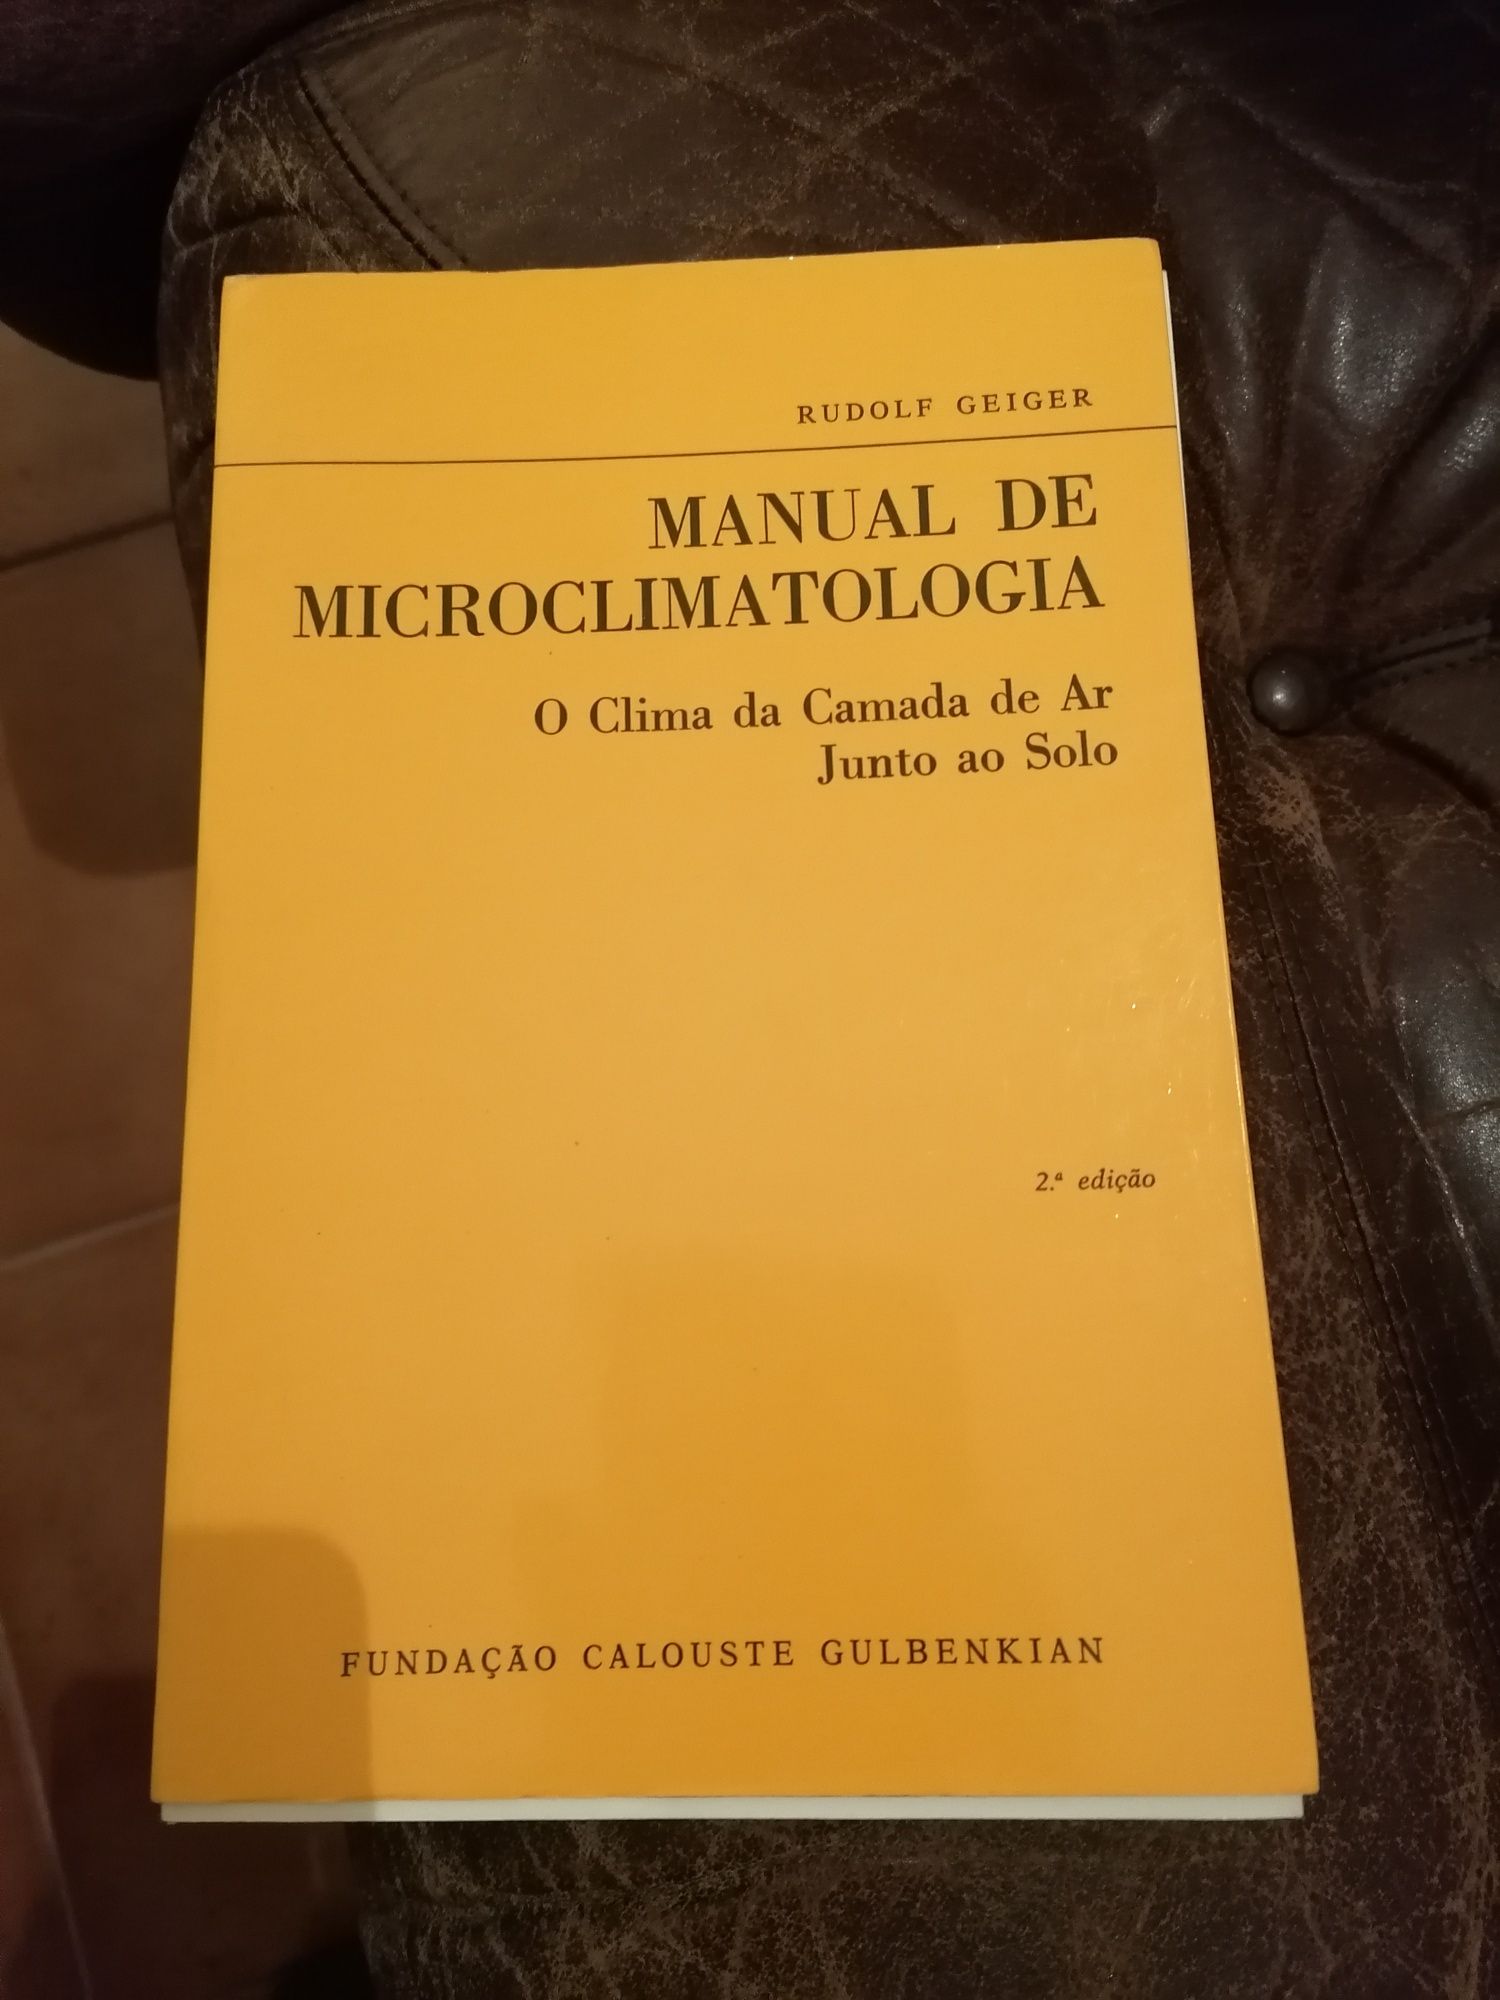 Livro "Manual de Microclimatologia " - FCG